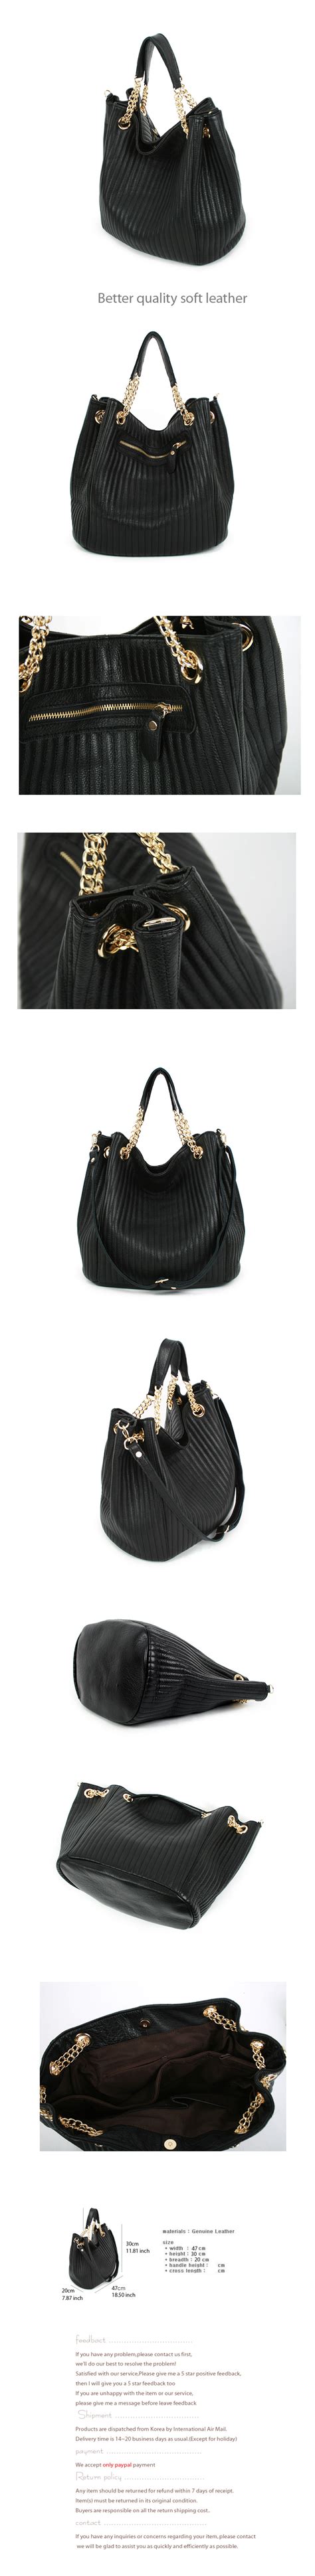 new leather handbag shoulder women bag brown black hobo tote purse designer lady ebay